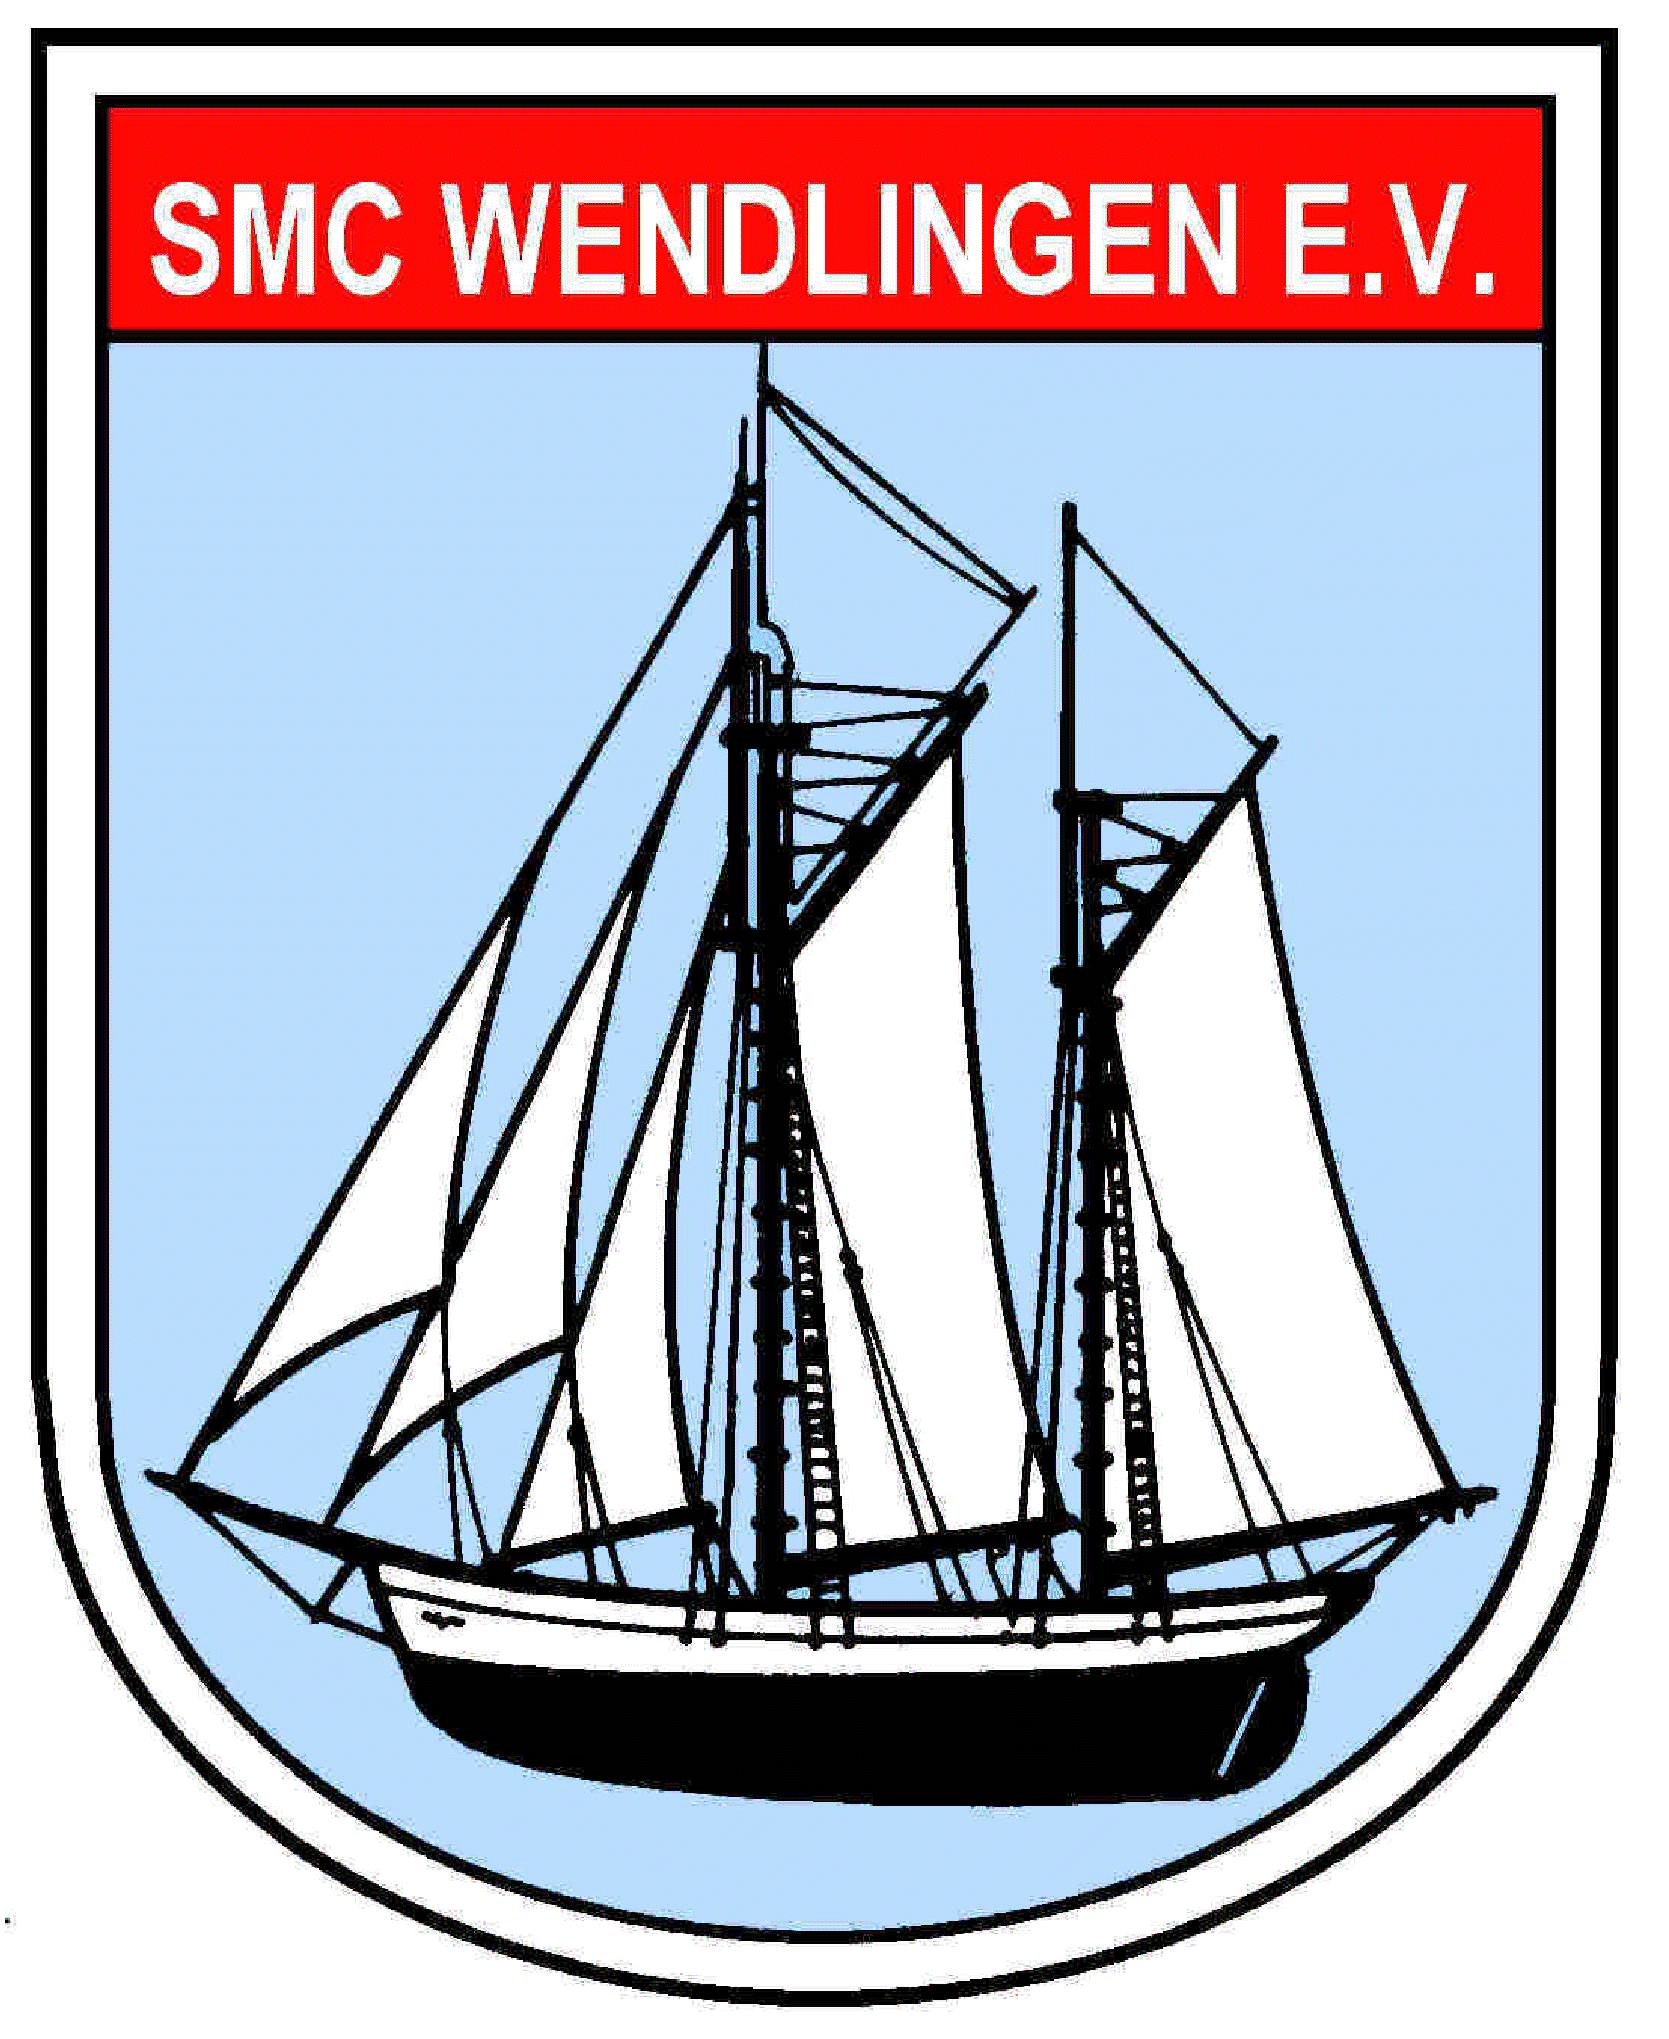 SMC Wendlingen e.V.